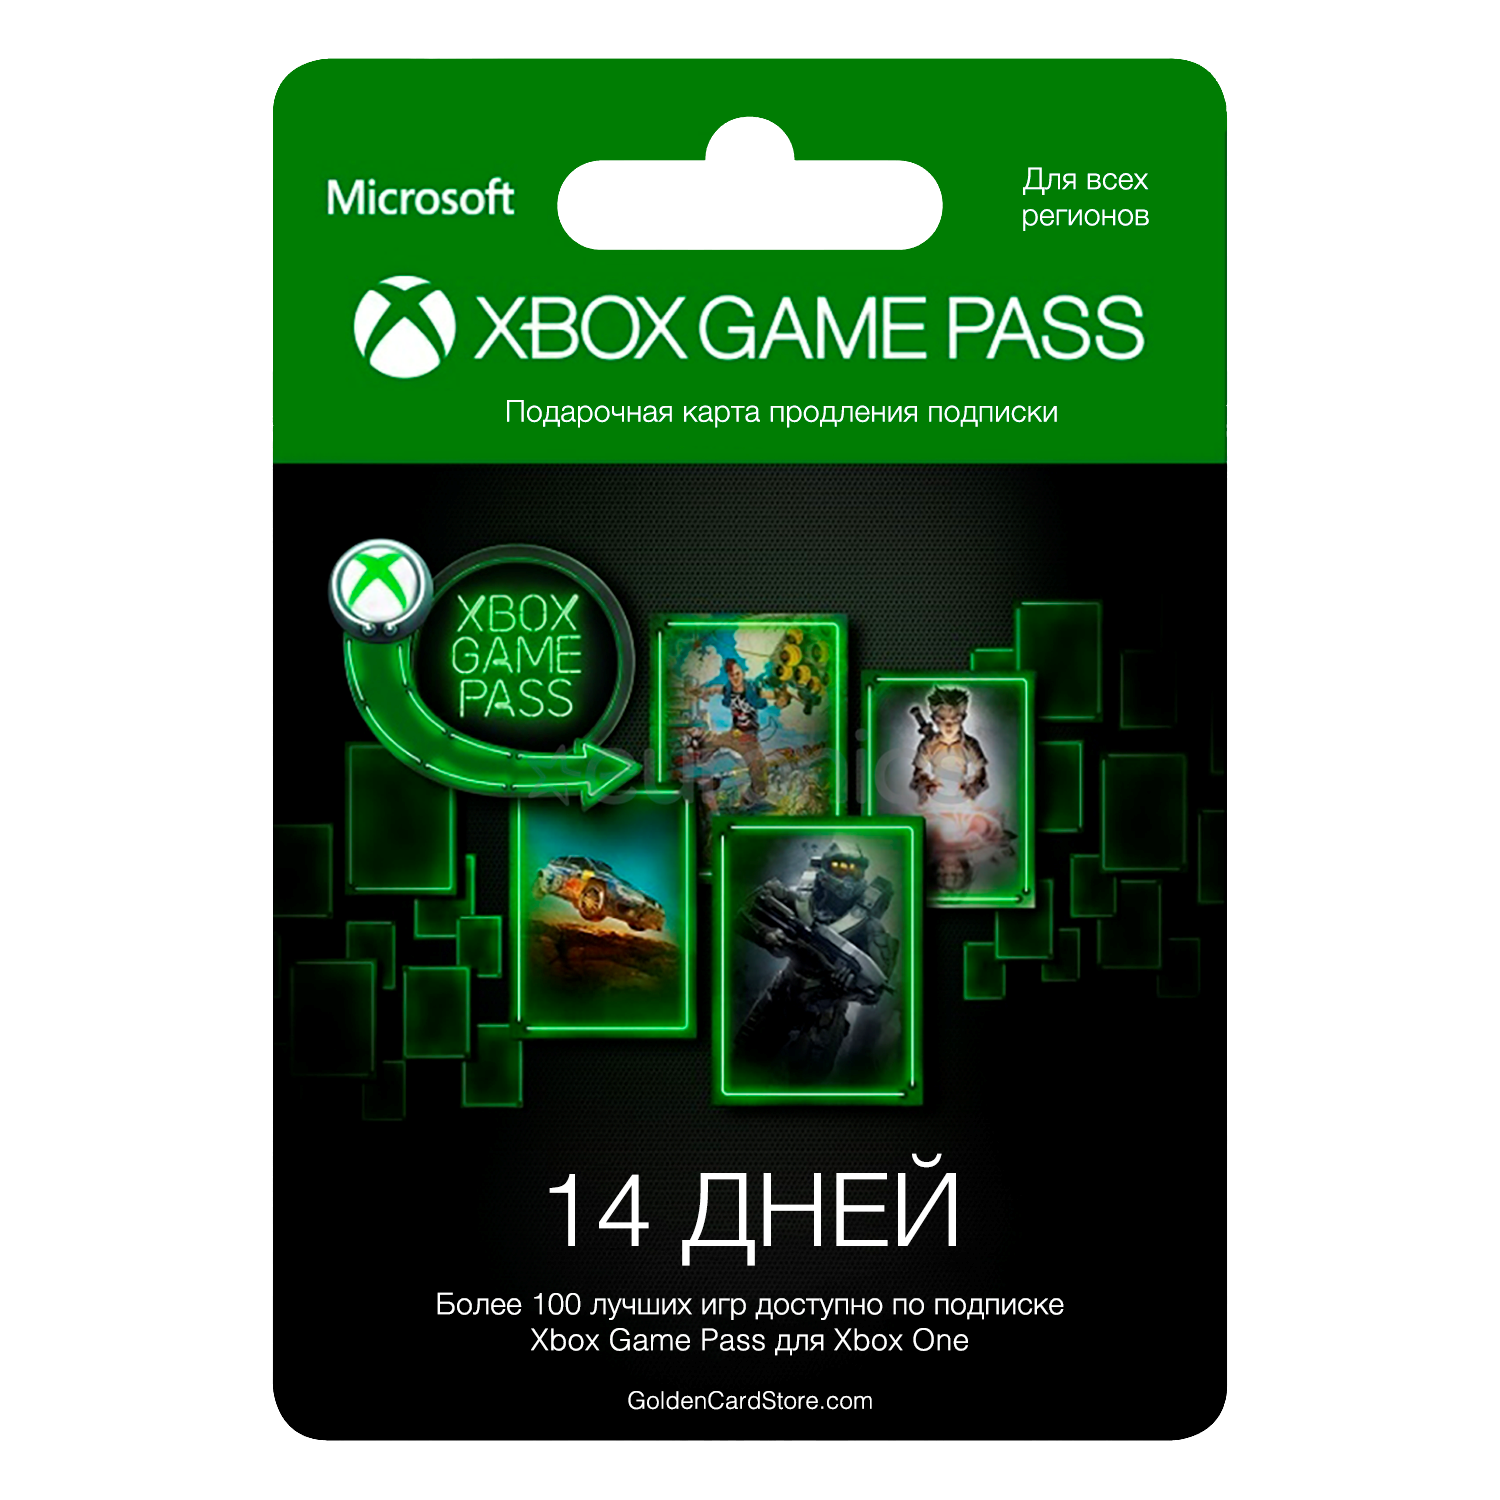 Подписка Xbox game Pass. Карта для Xbox game Pass. Microsoft Xbox подписка. Карточка гейм пасс. Подписка хбокс гейм